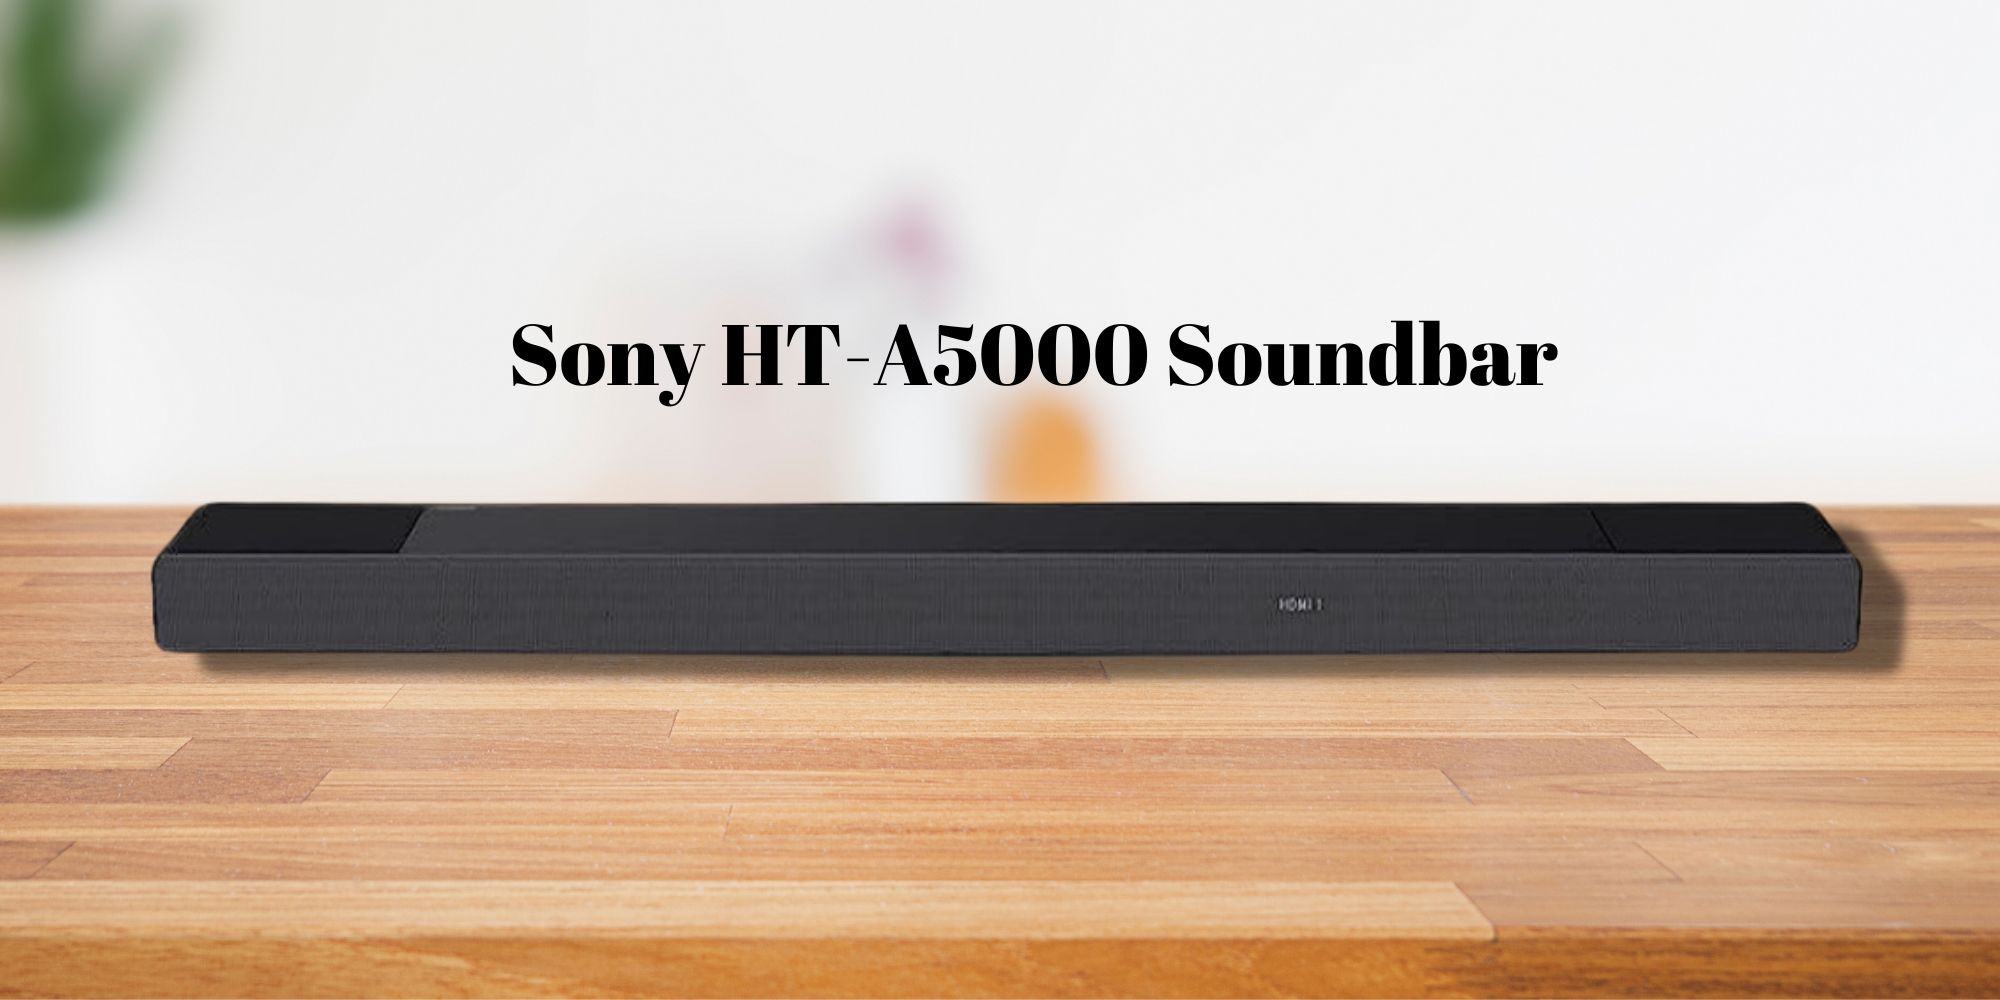 Ahorre $ 300 en la barra de sonido HT-A5000 de Sony y obtenga también 3 meses de Apple TV+